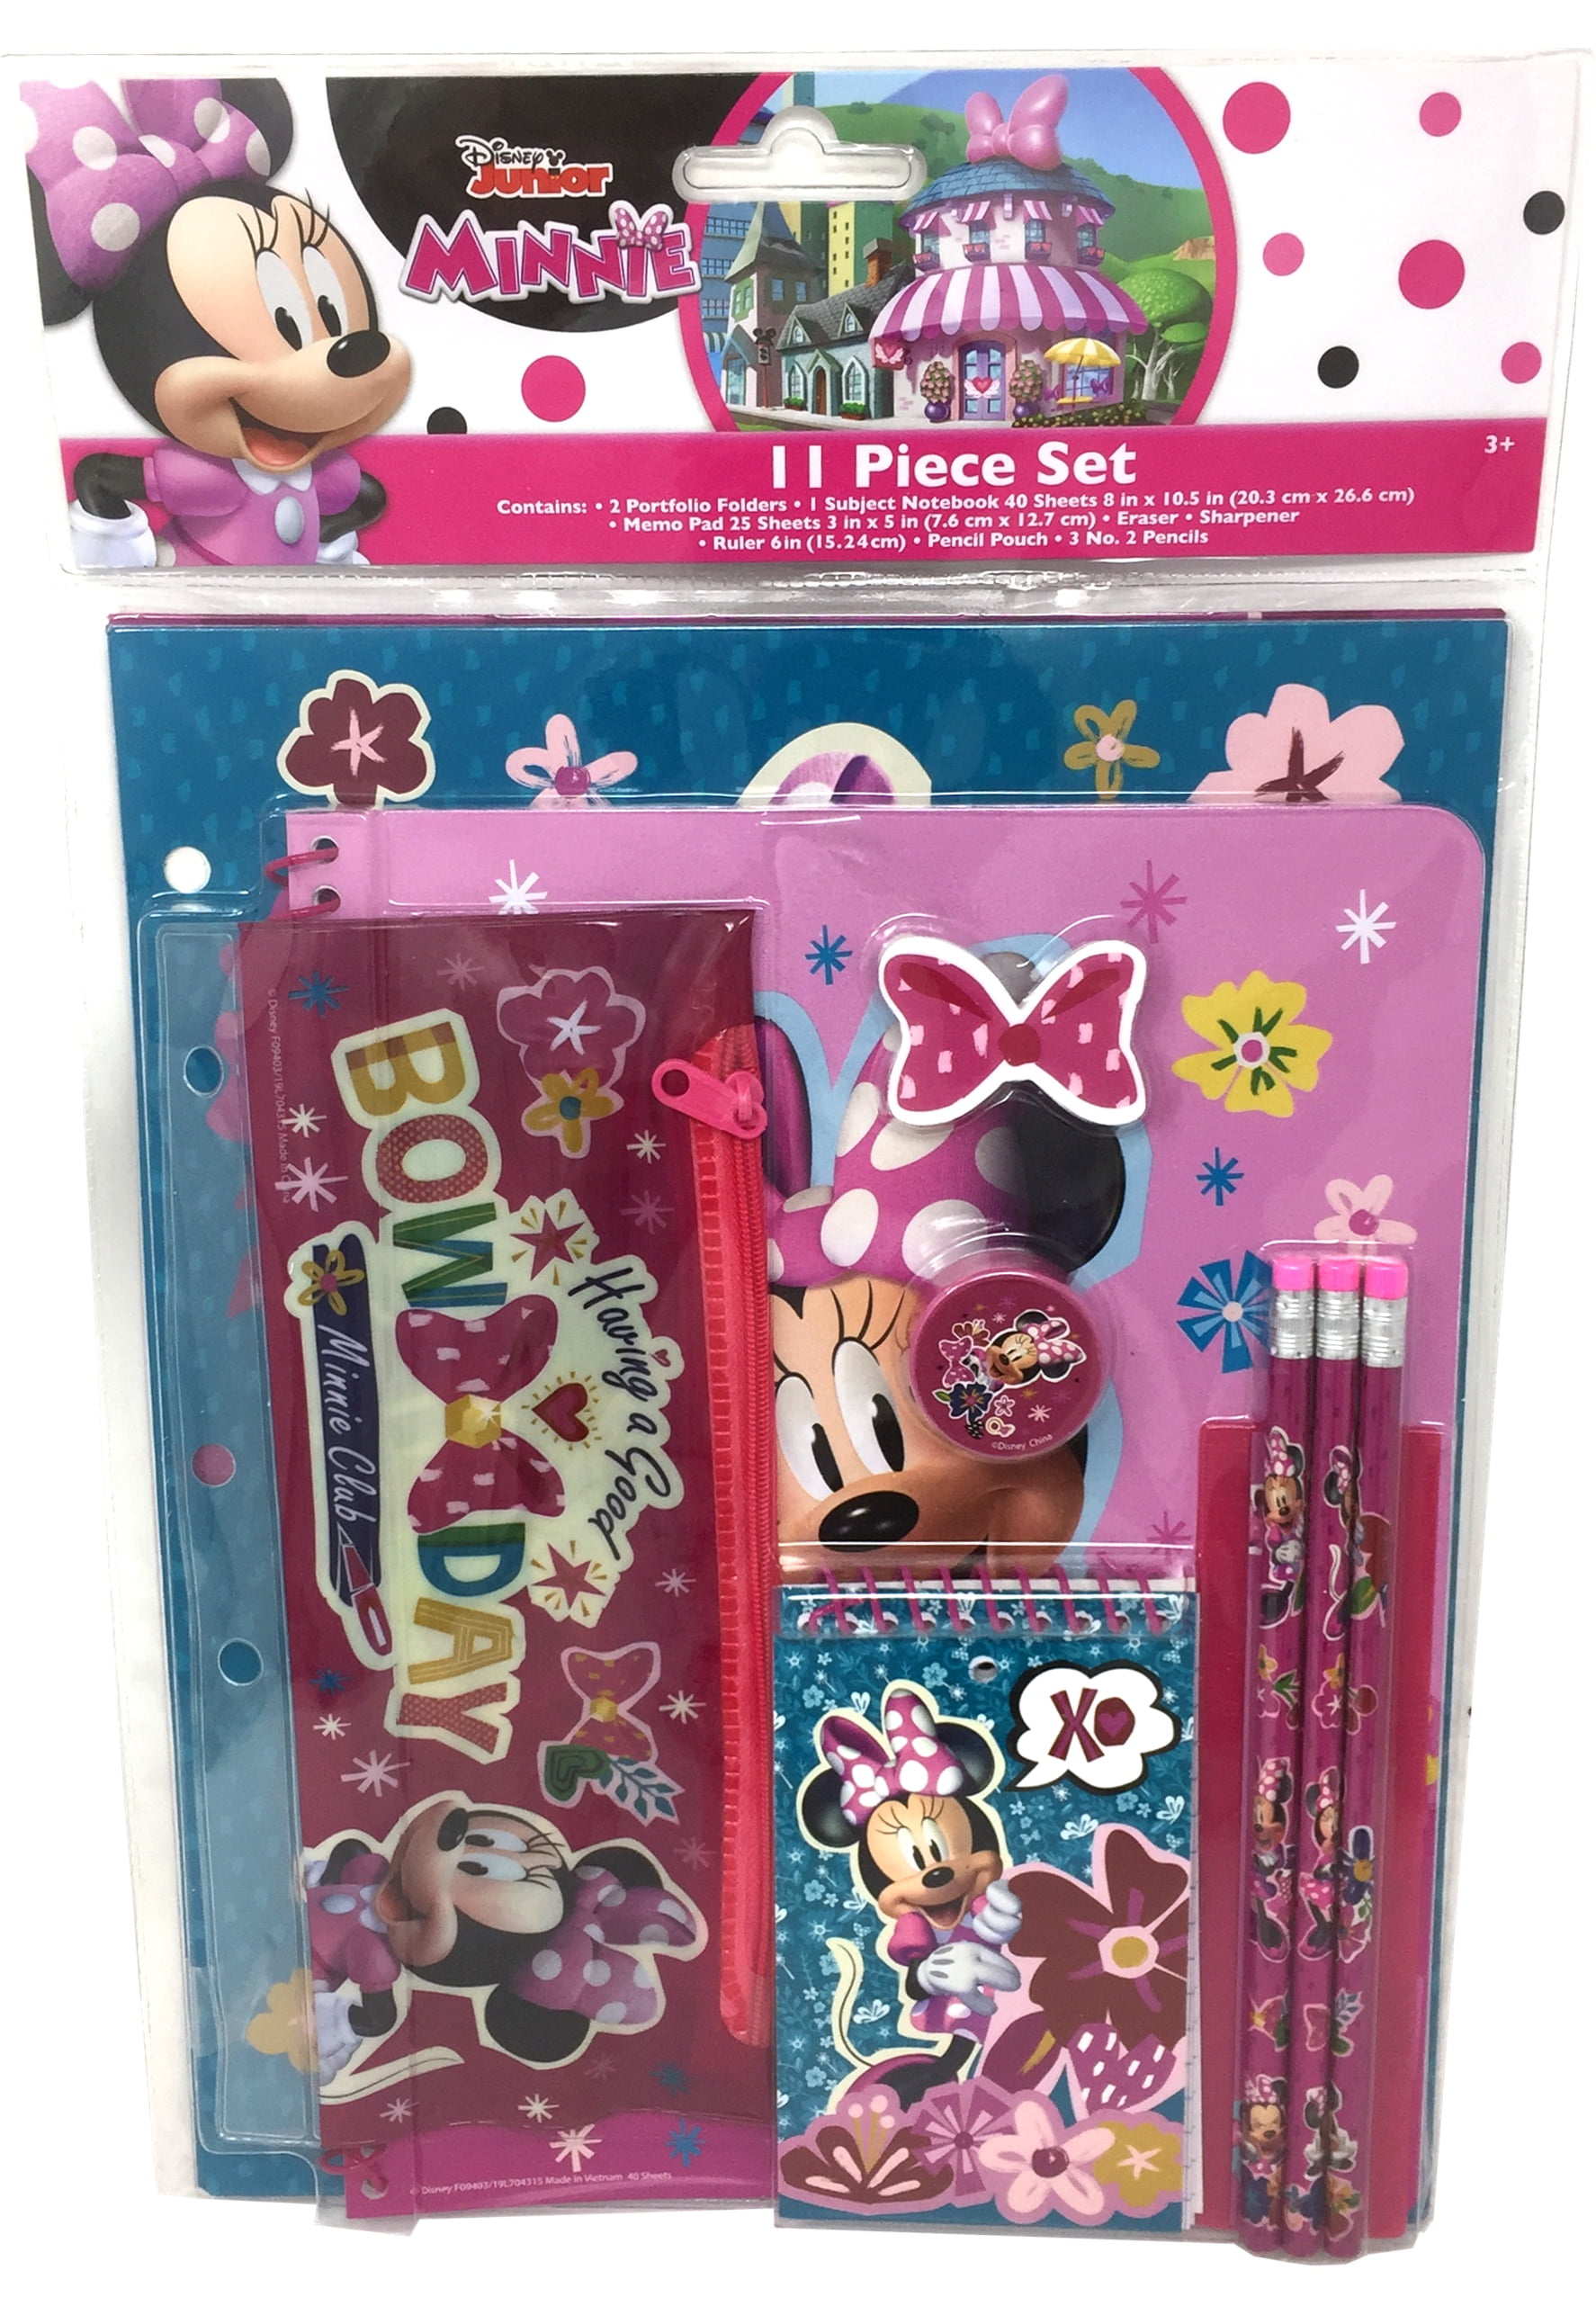 Minnie Bow-Tique 11 Piece Stationery Set - Walmart.com - Walmart.com